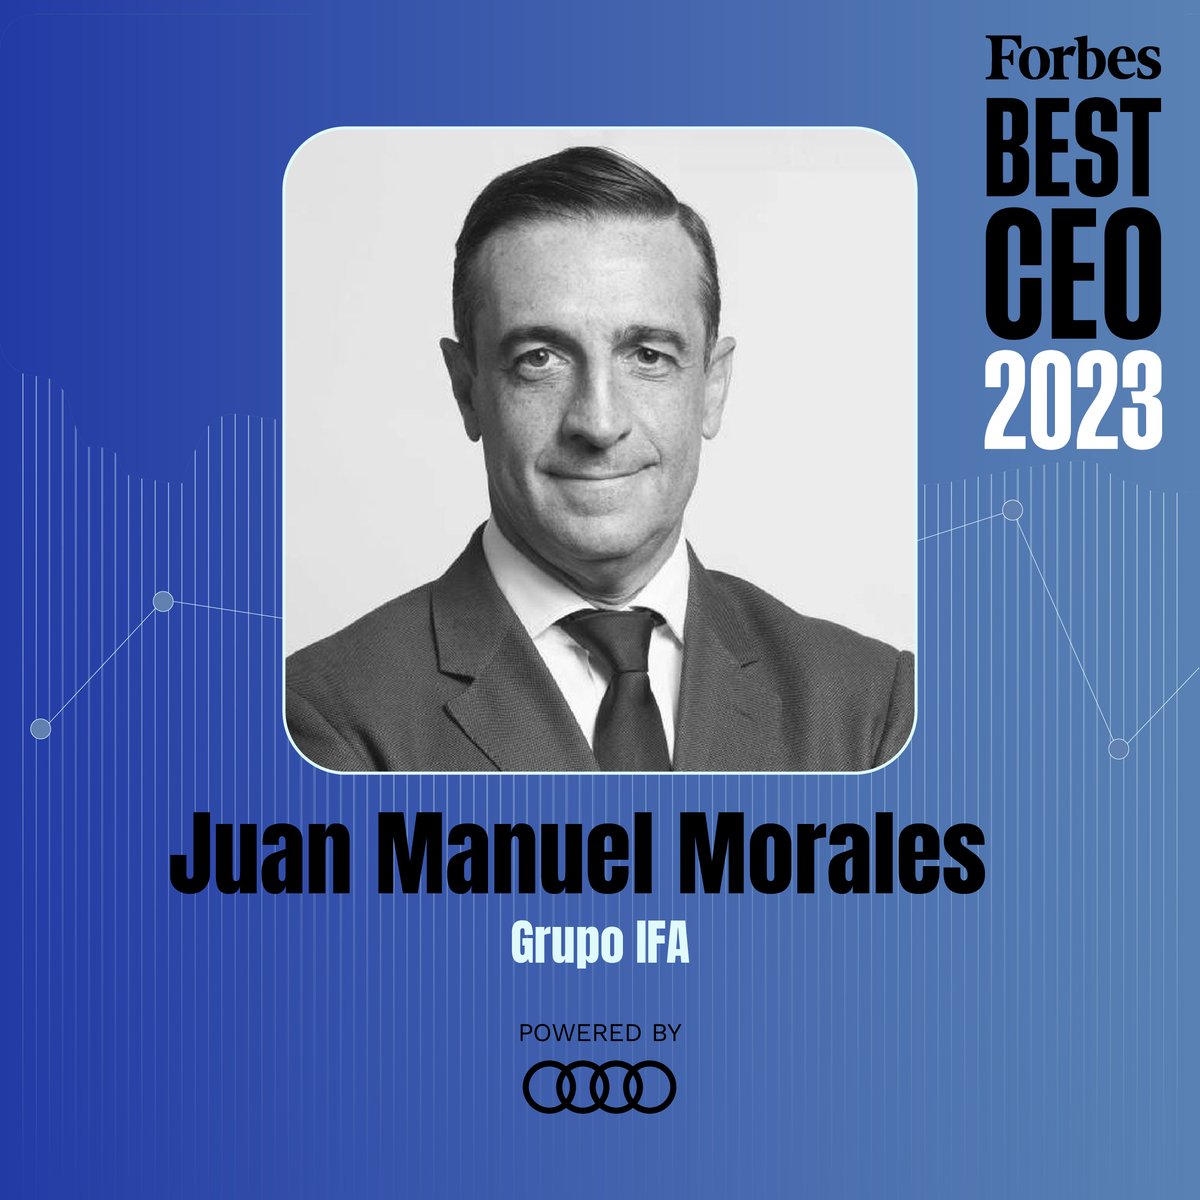 🏅 #ForbesBestCEO23 👤 Juan Manuel Morales -@JUANMA26MORALES- 💼 @GrupoIFA Powered by @audispain forbes.es/los-100-mejore…